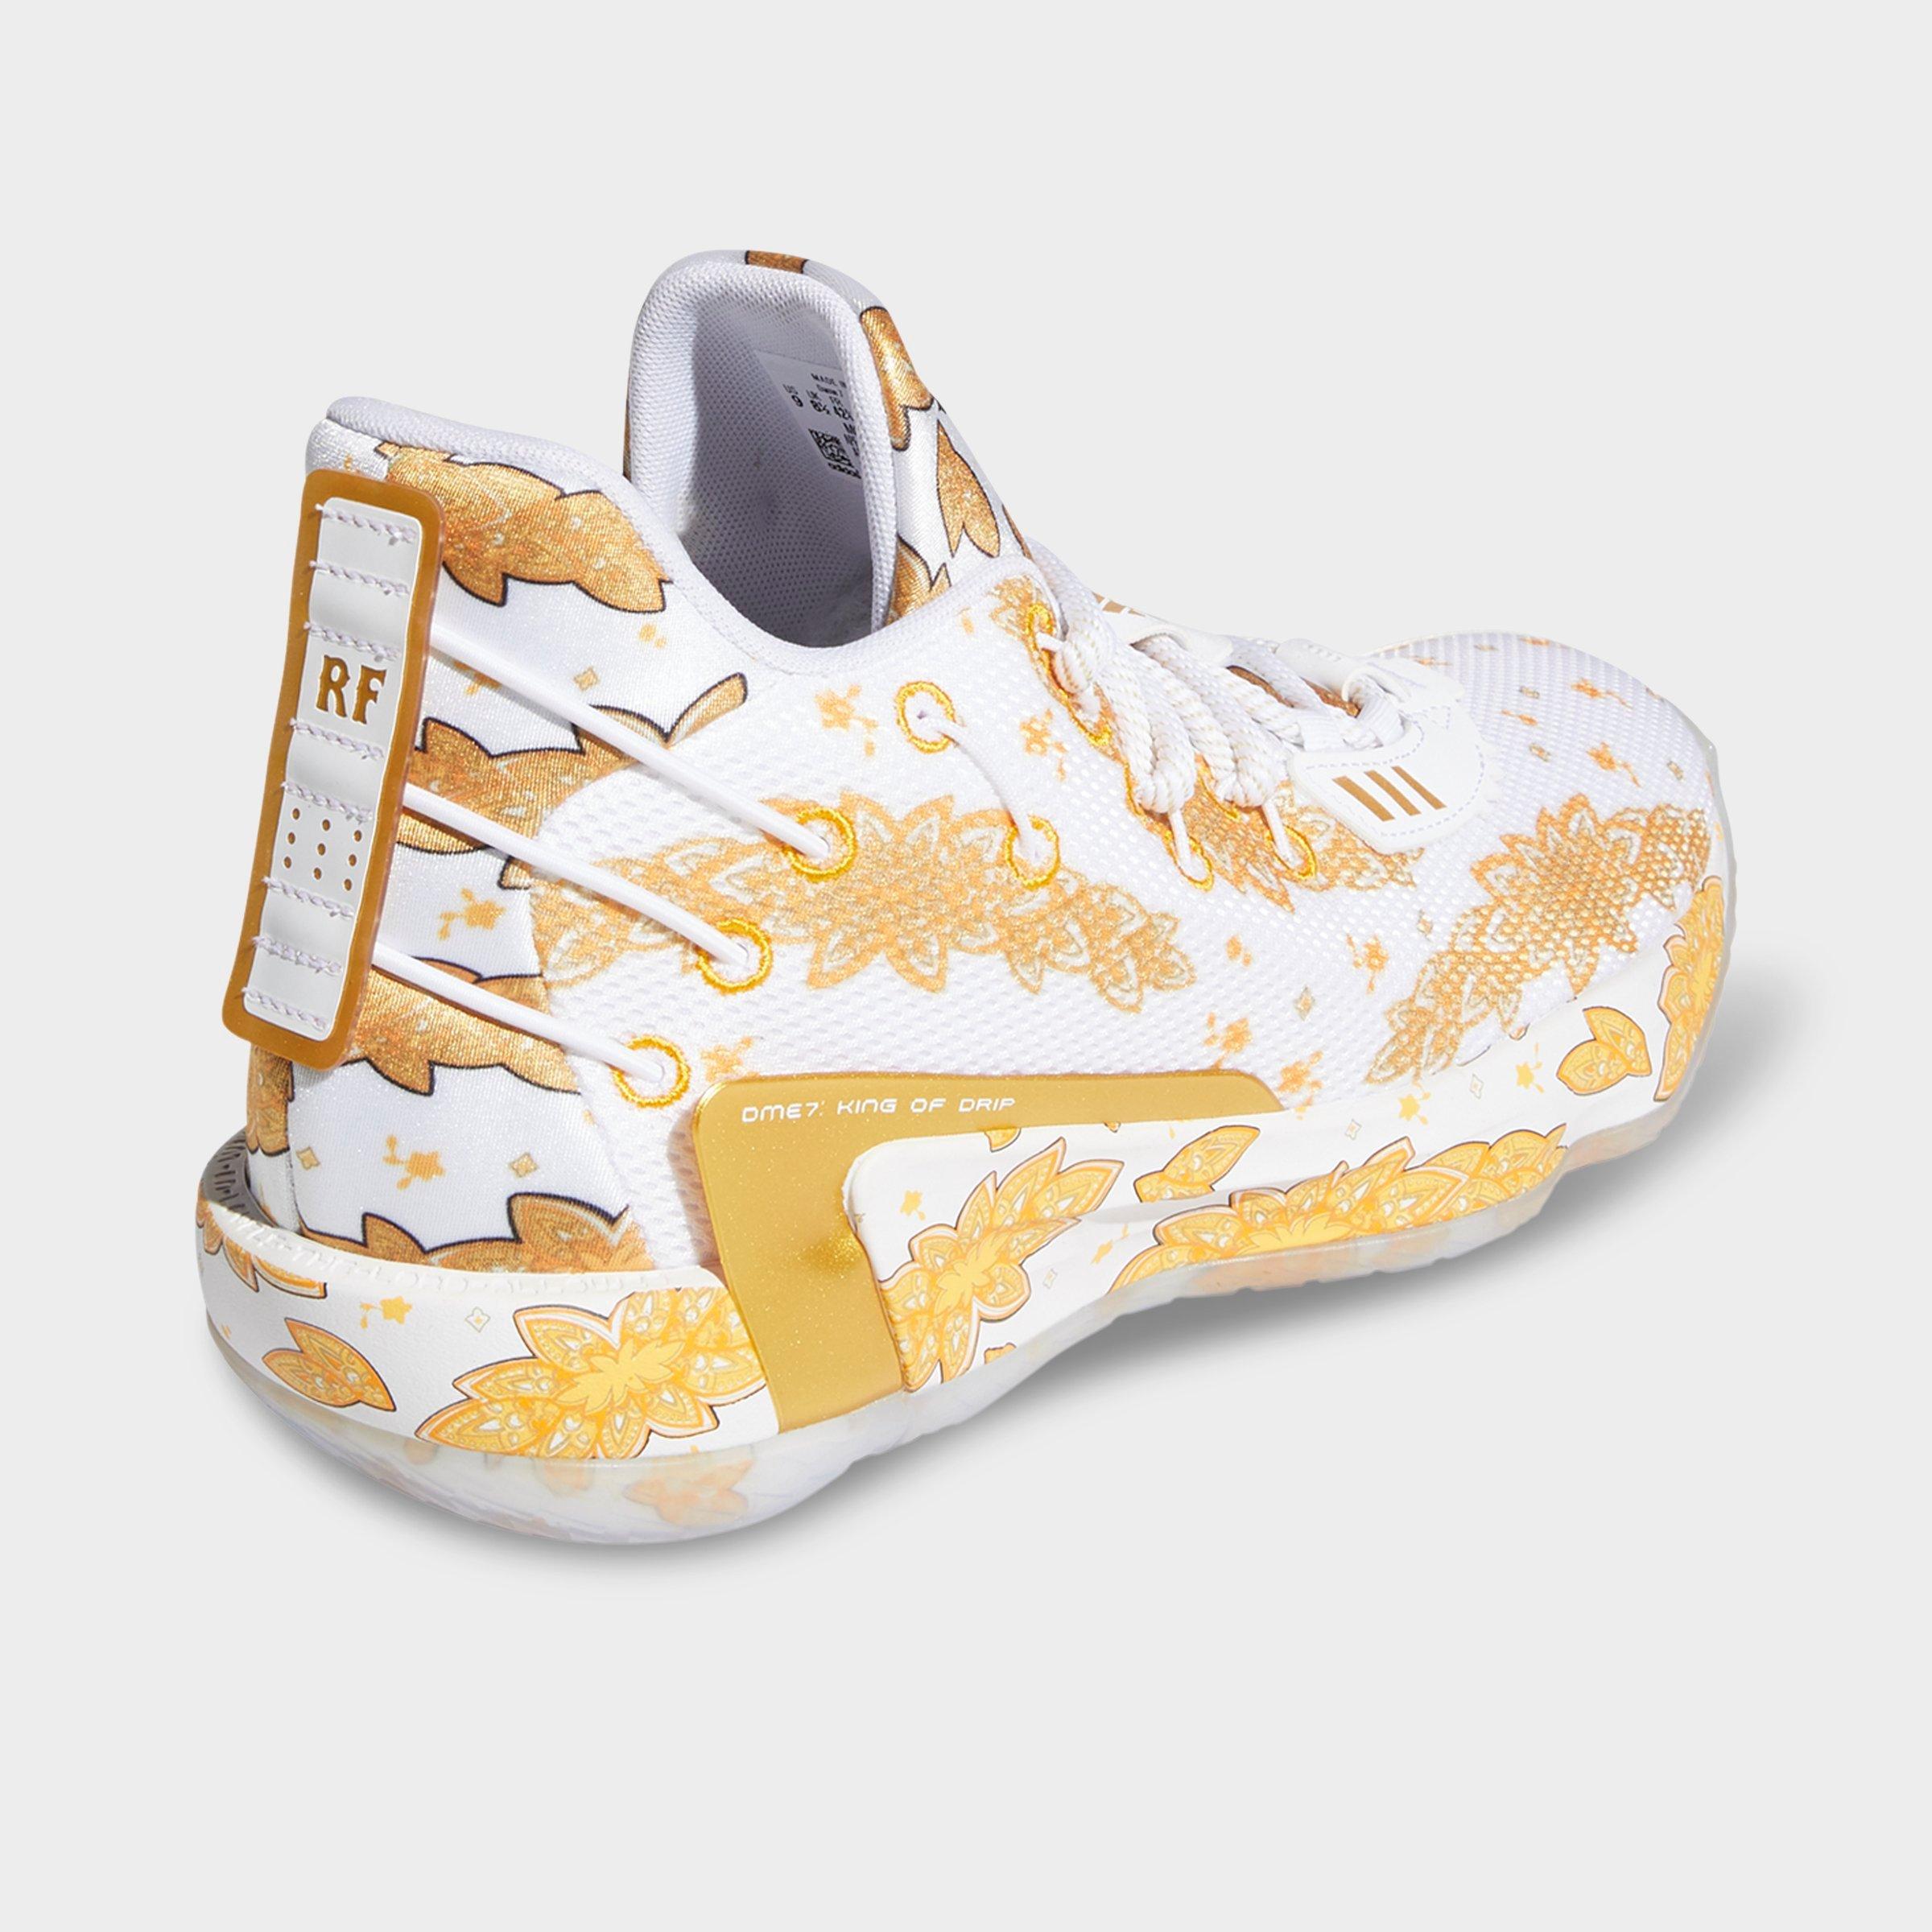 adidas dame 7 x ric flair basketball shoes